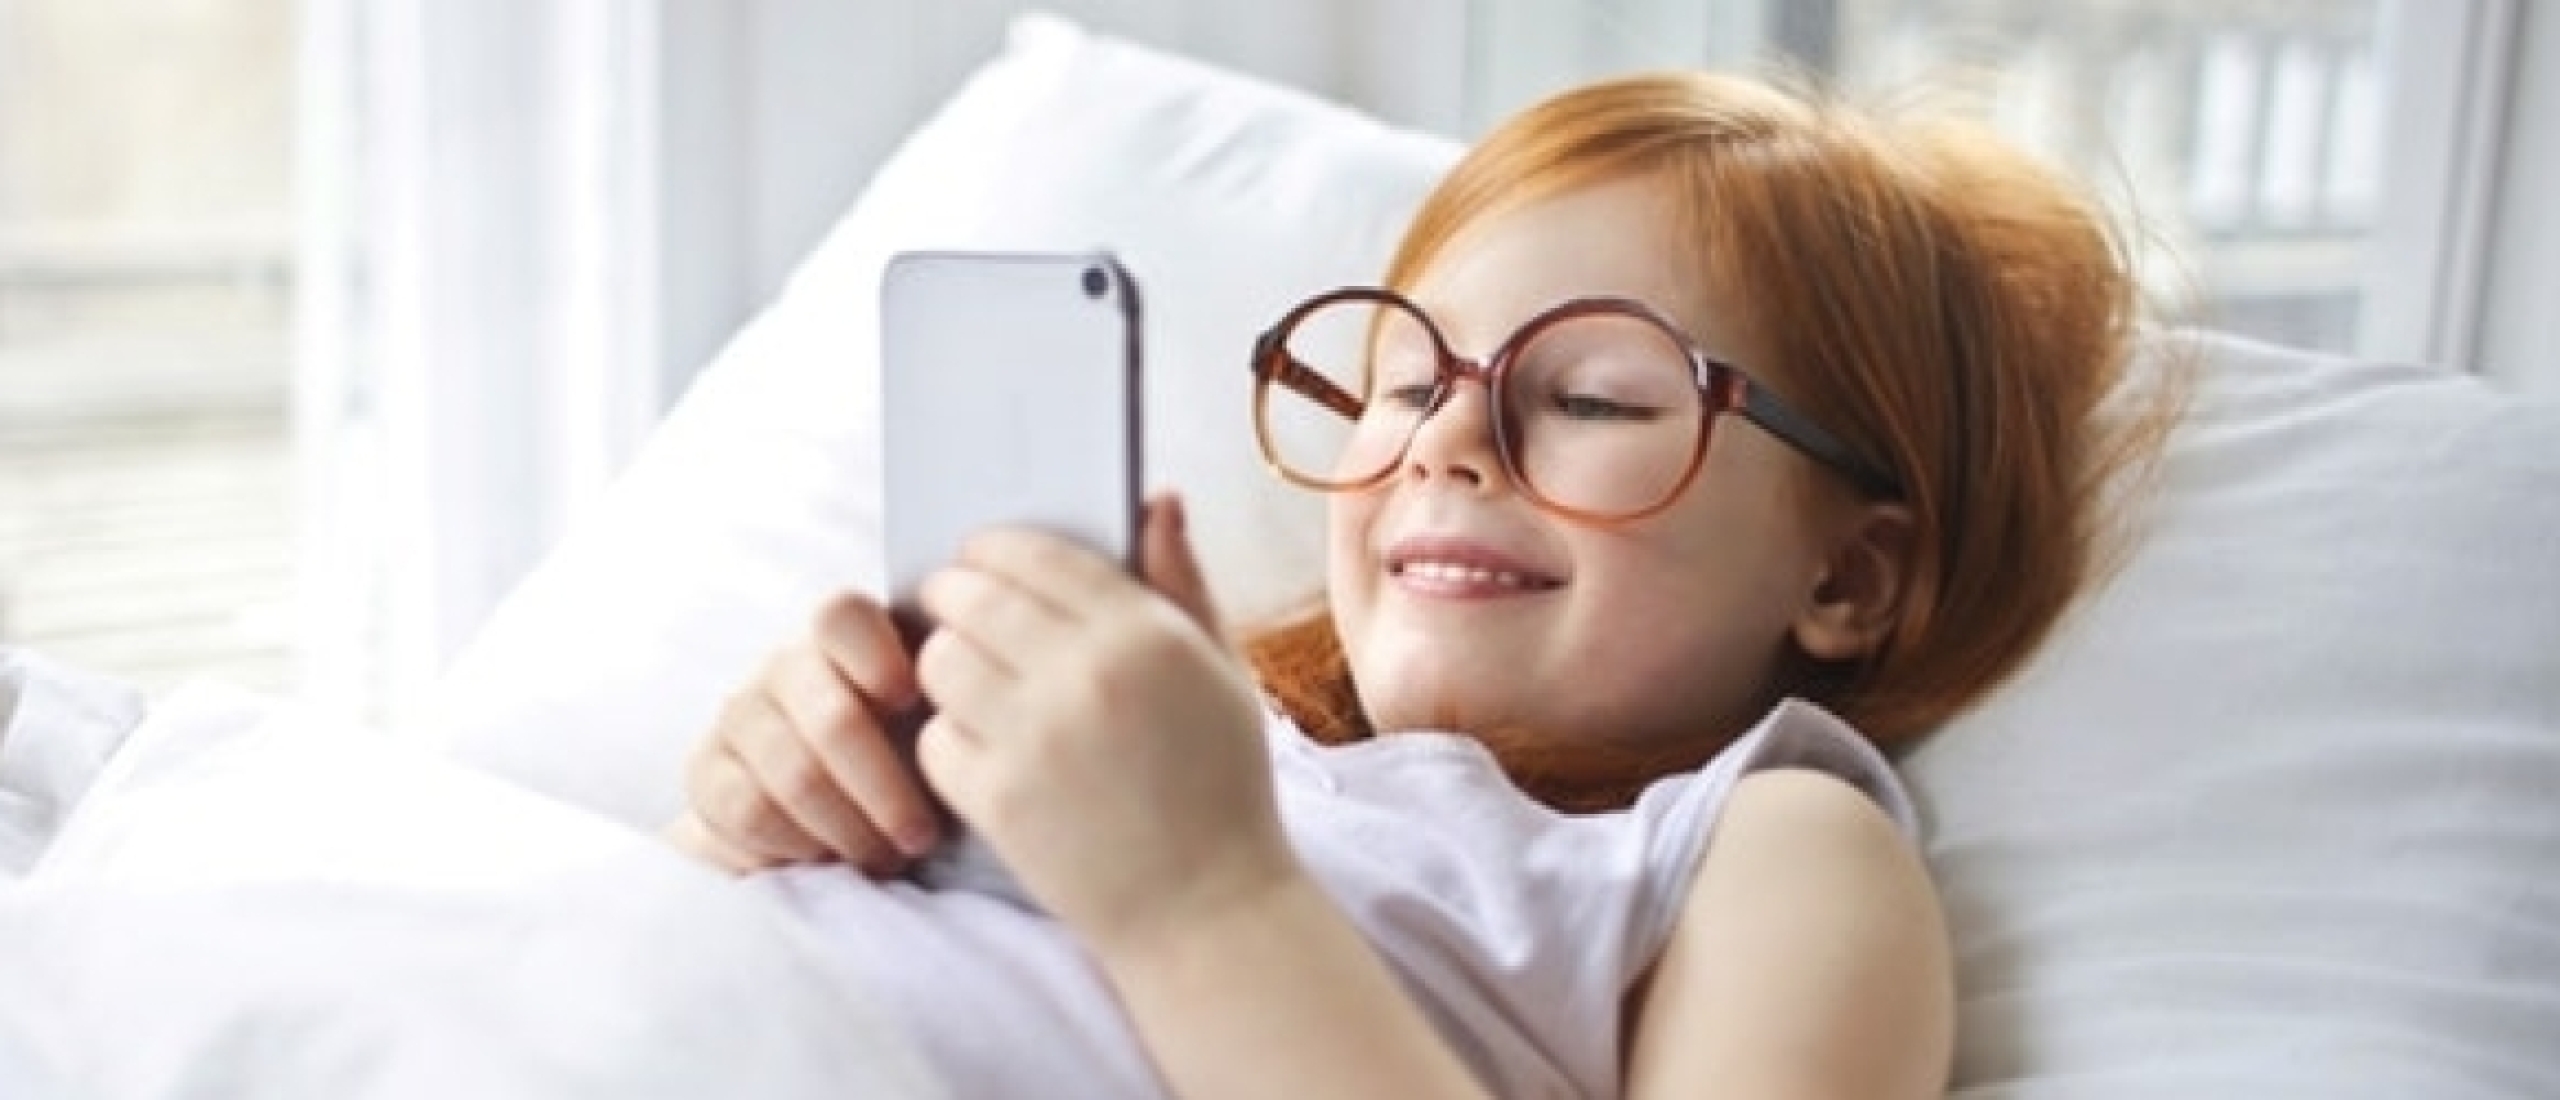 Slapen naast je smartphone: Een verstandige keus?